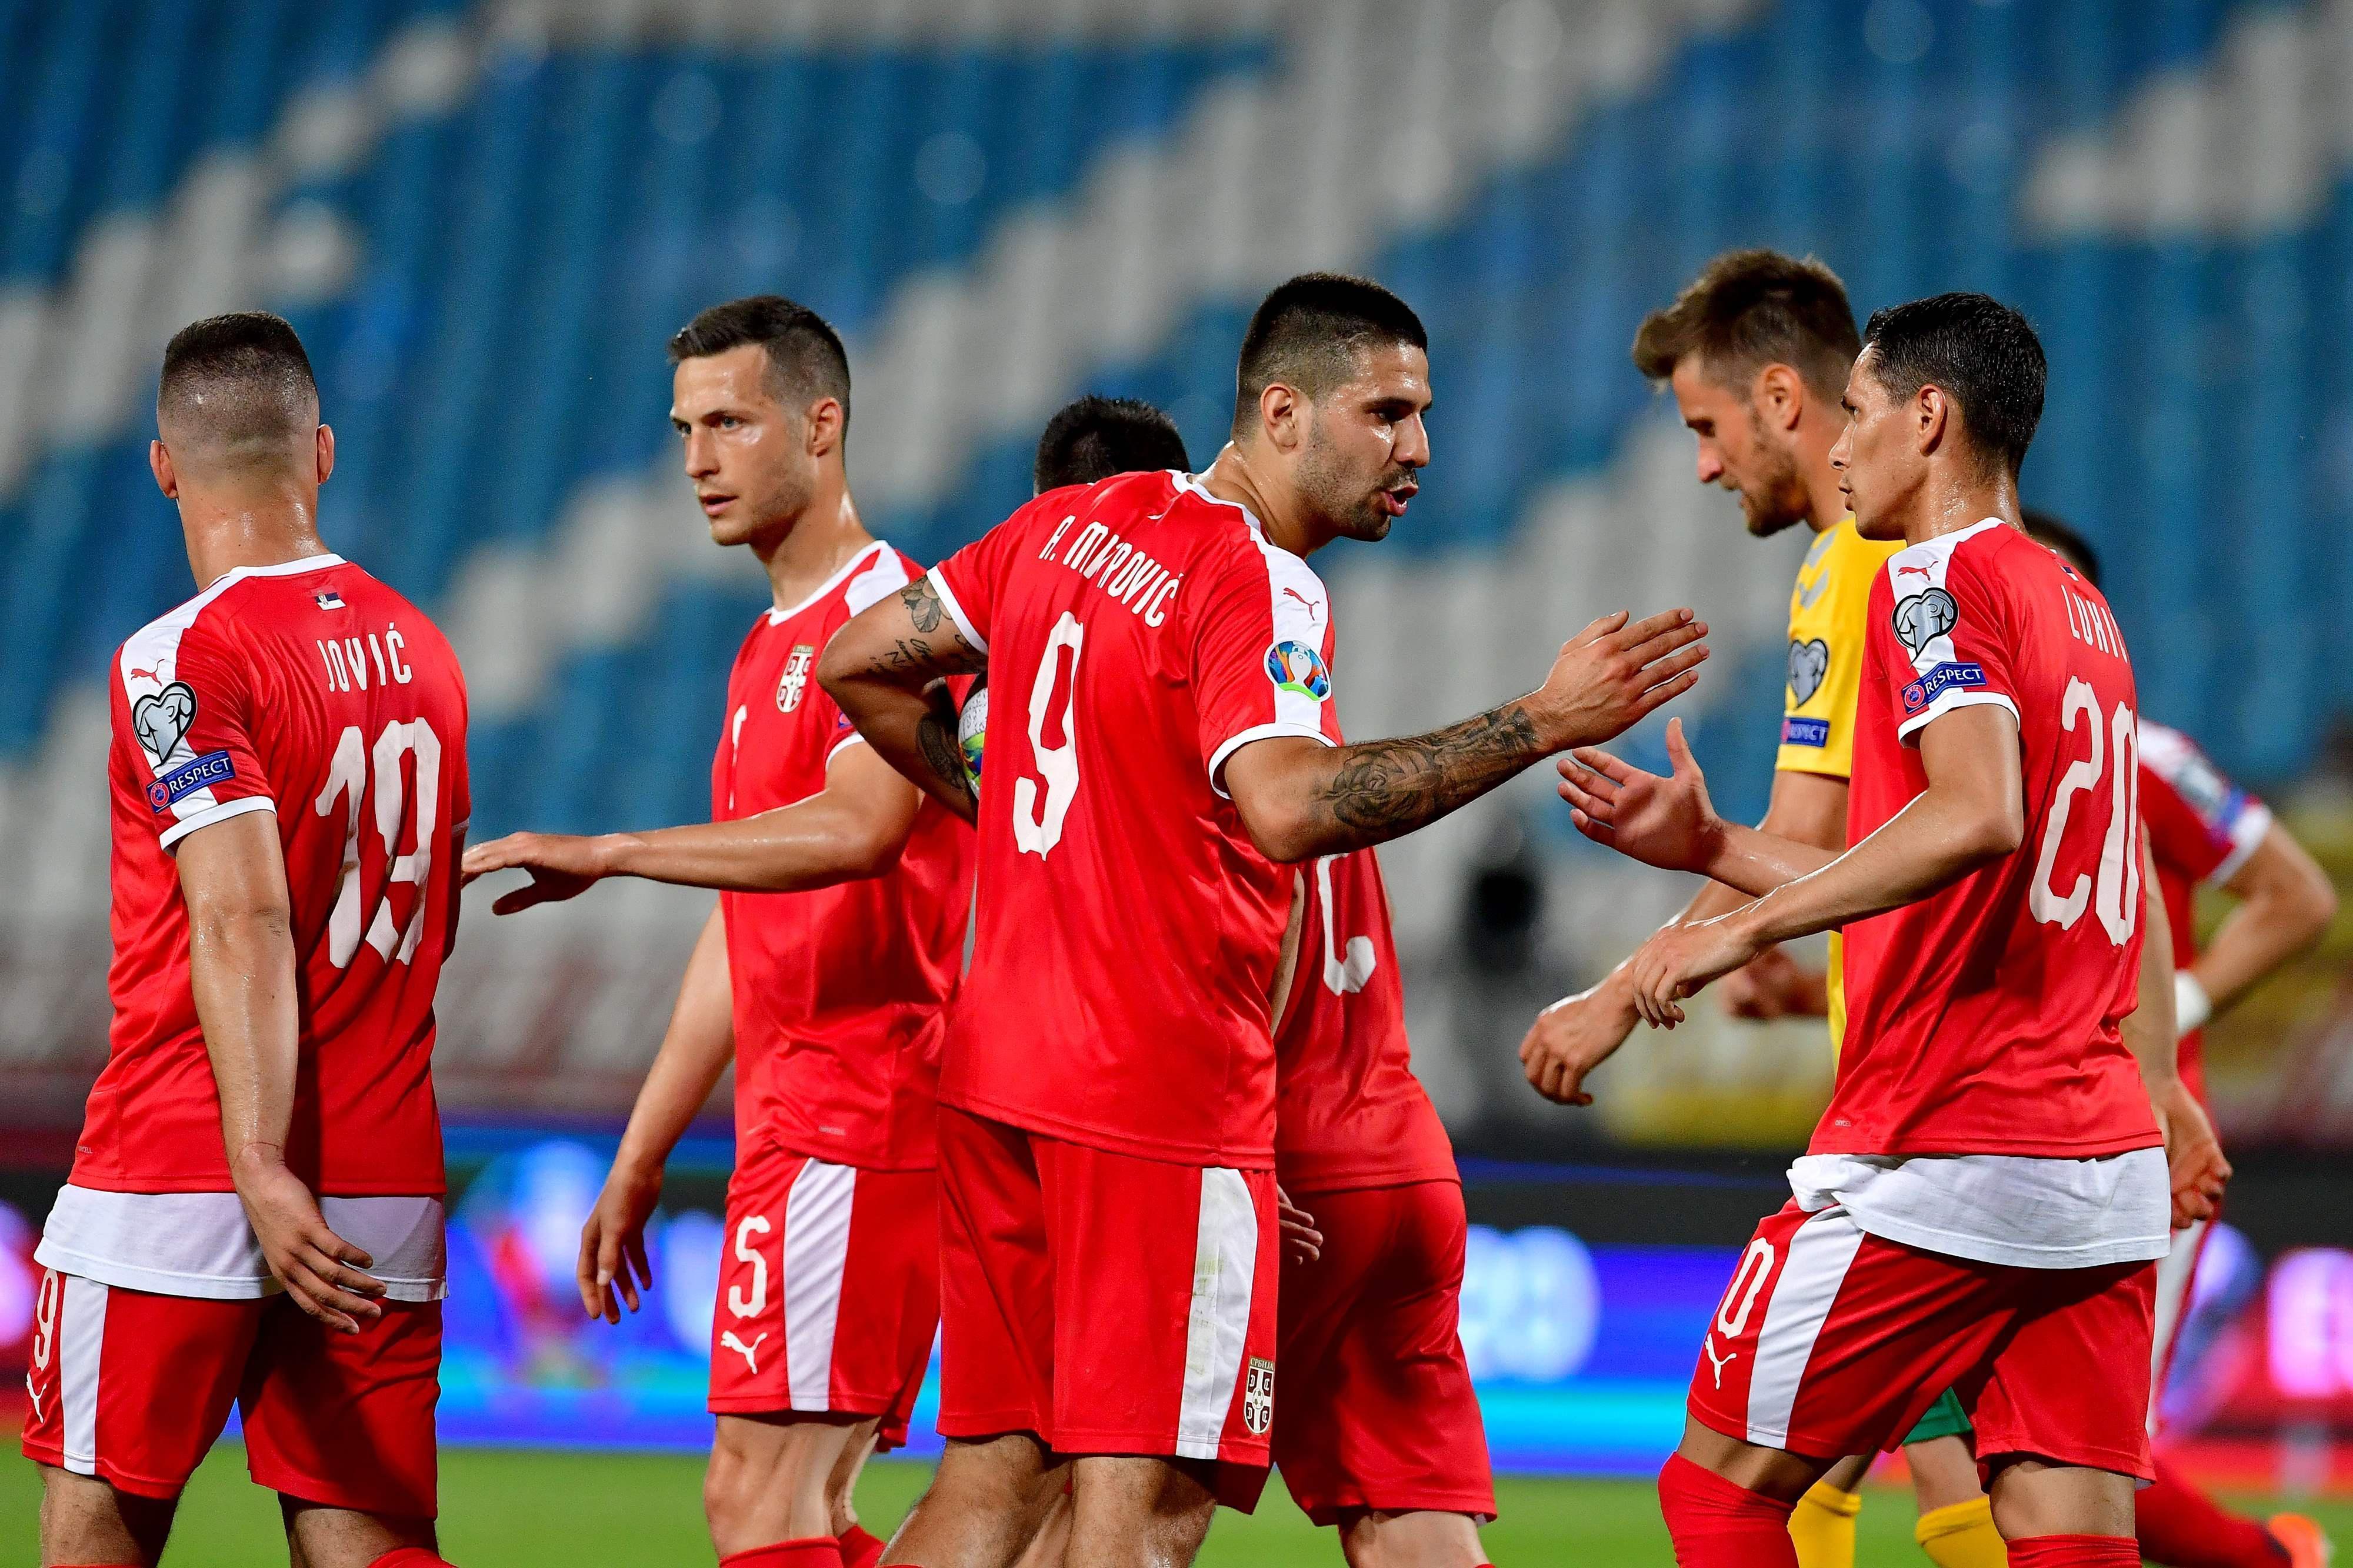 Sırbistan-Litvanya maç sonucu: 4-1